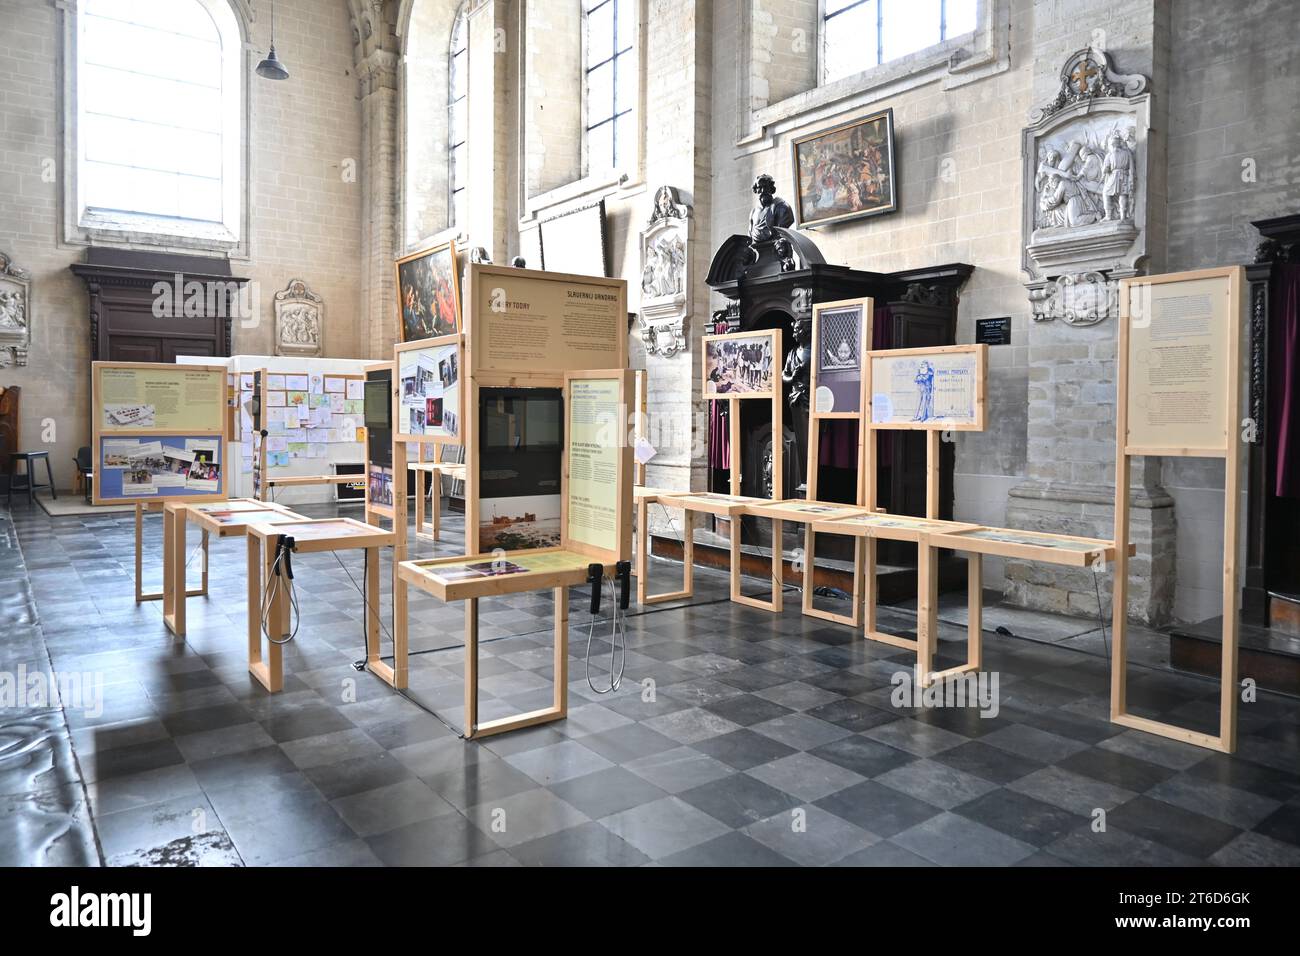 Eine Ausstellung über Sklaverei in der Kirche St. Johannes der Täufer in der Béguinage (Eglise Saint-Jean-Baptiste au Béguinage) – Brüssel Belgien – Stockfoto